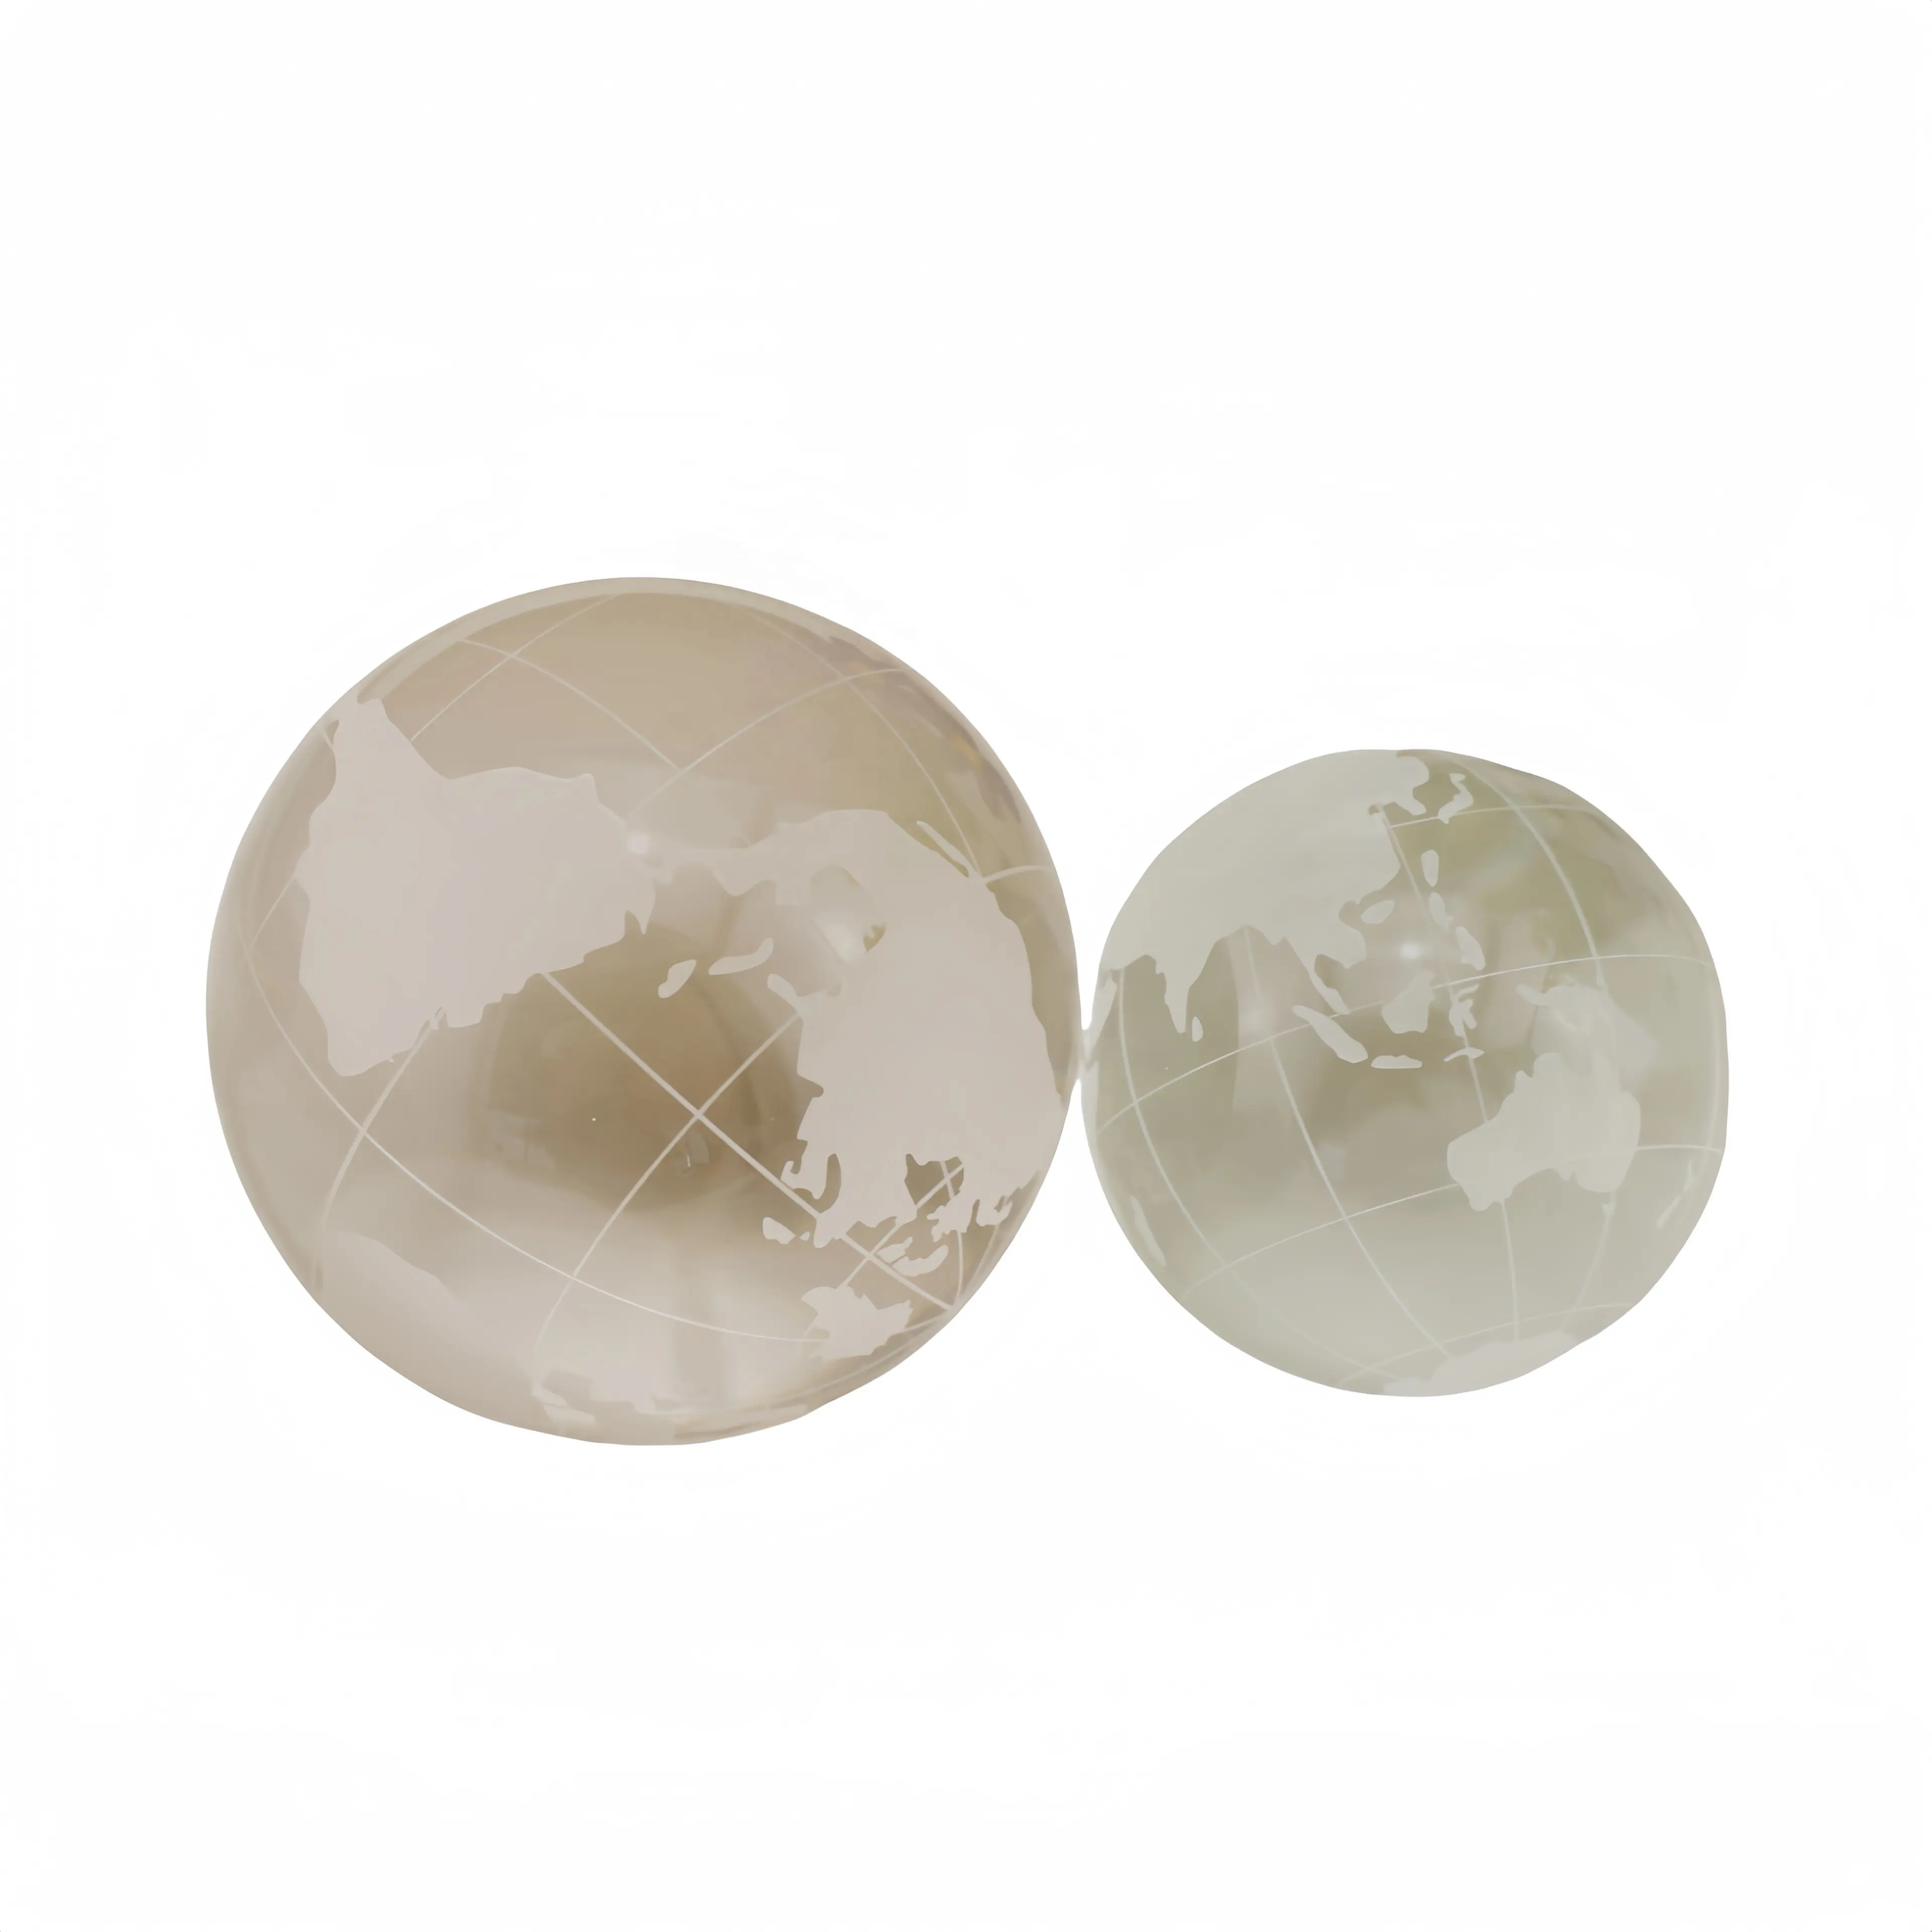 Mapamundi pisapapeles de bola de cristal grabado, premio de globo de cristal de chorro de arena para regalos de negocios, globo del Mundo de Cristal con soporte